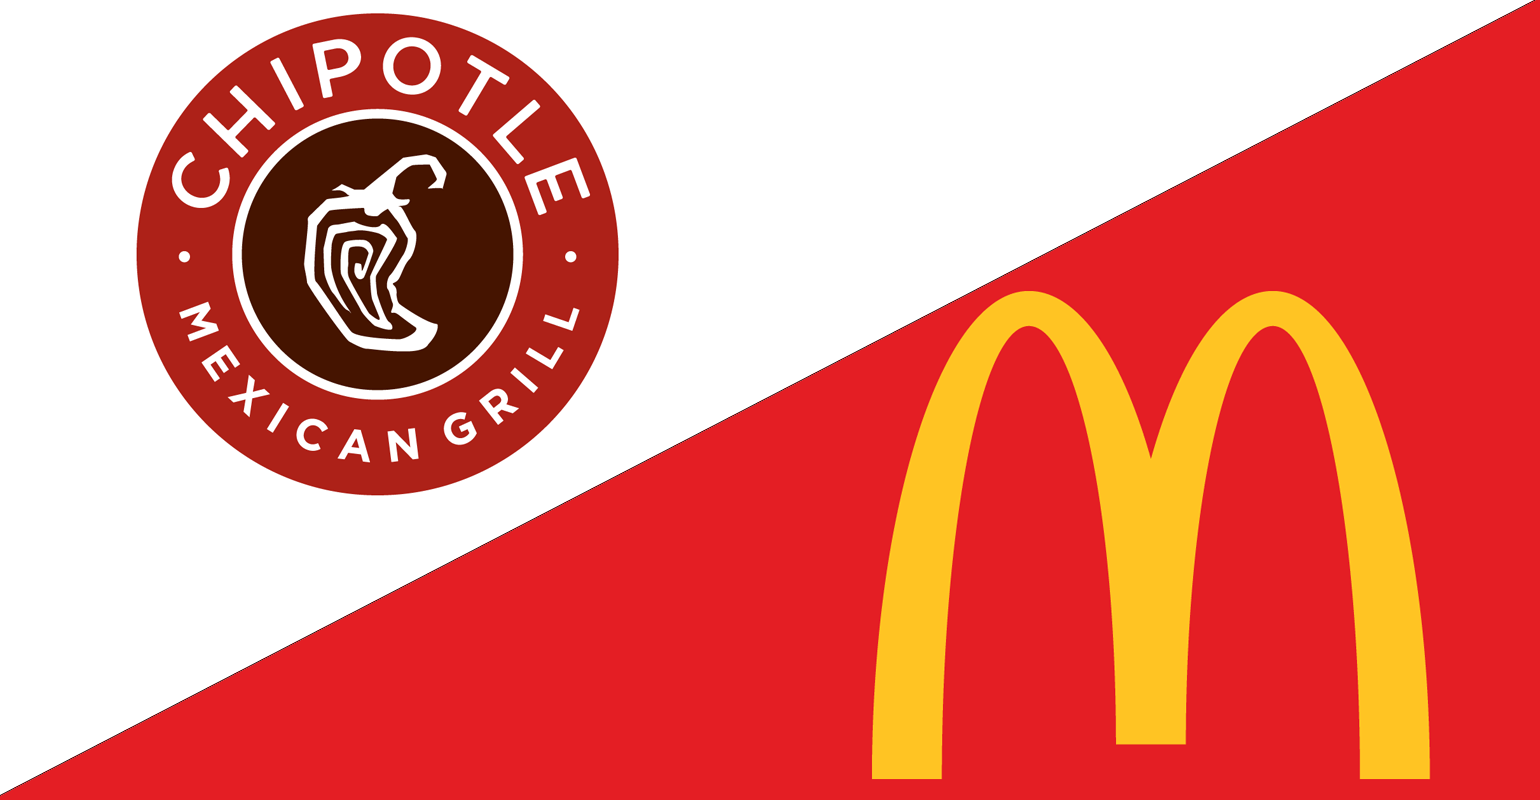 Đặt lên bàn cân 2 mã fast food đình đám: Chipotle và McDonald’s